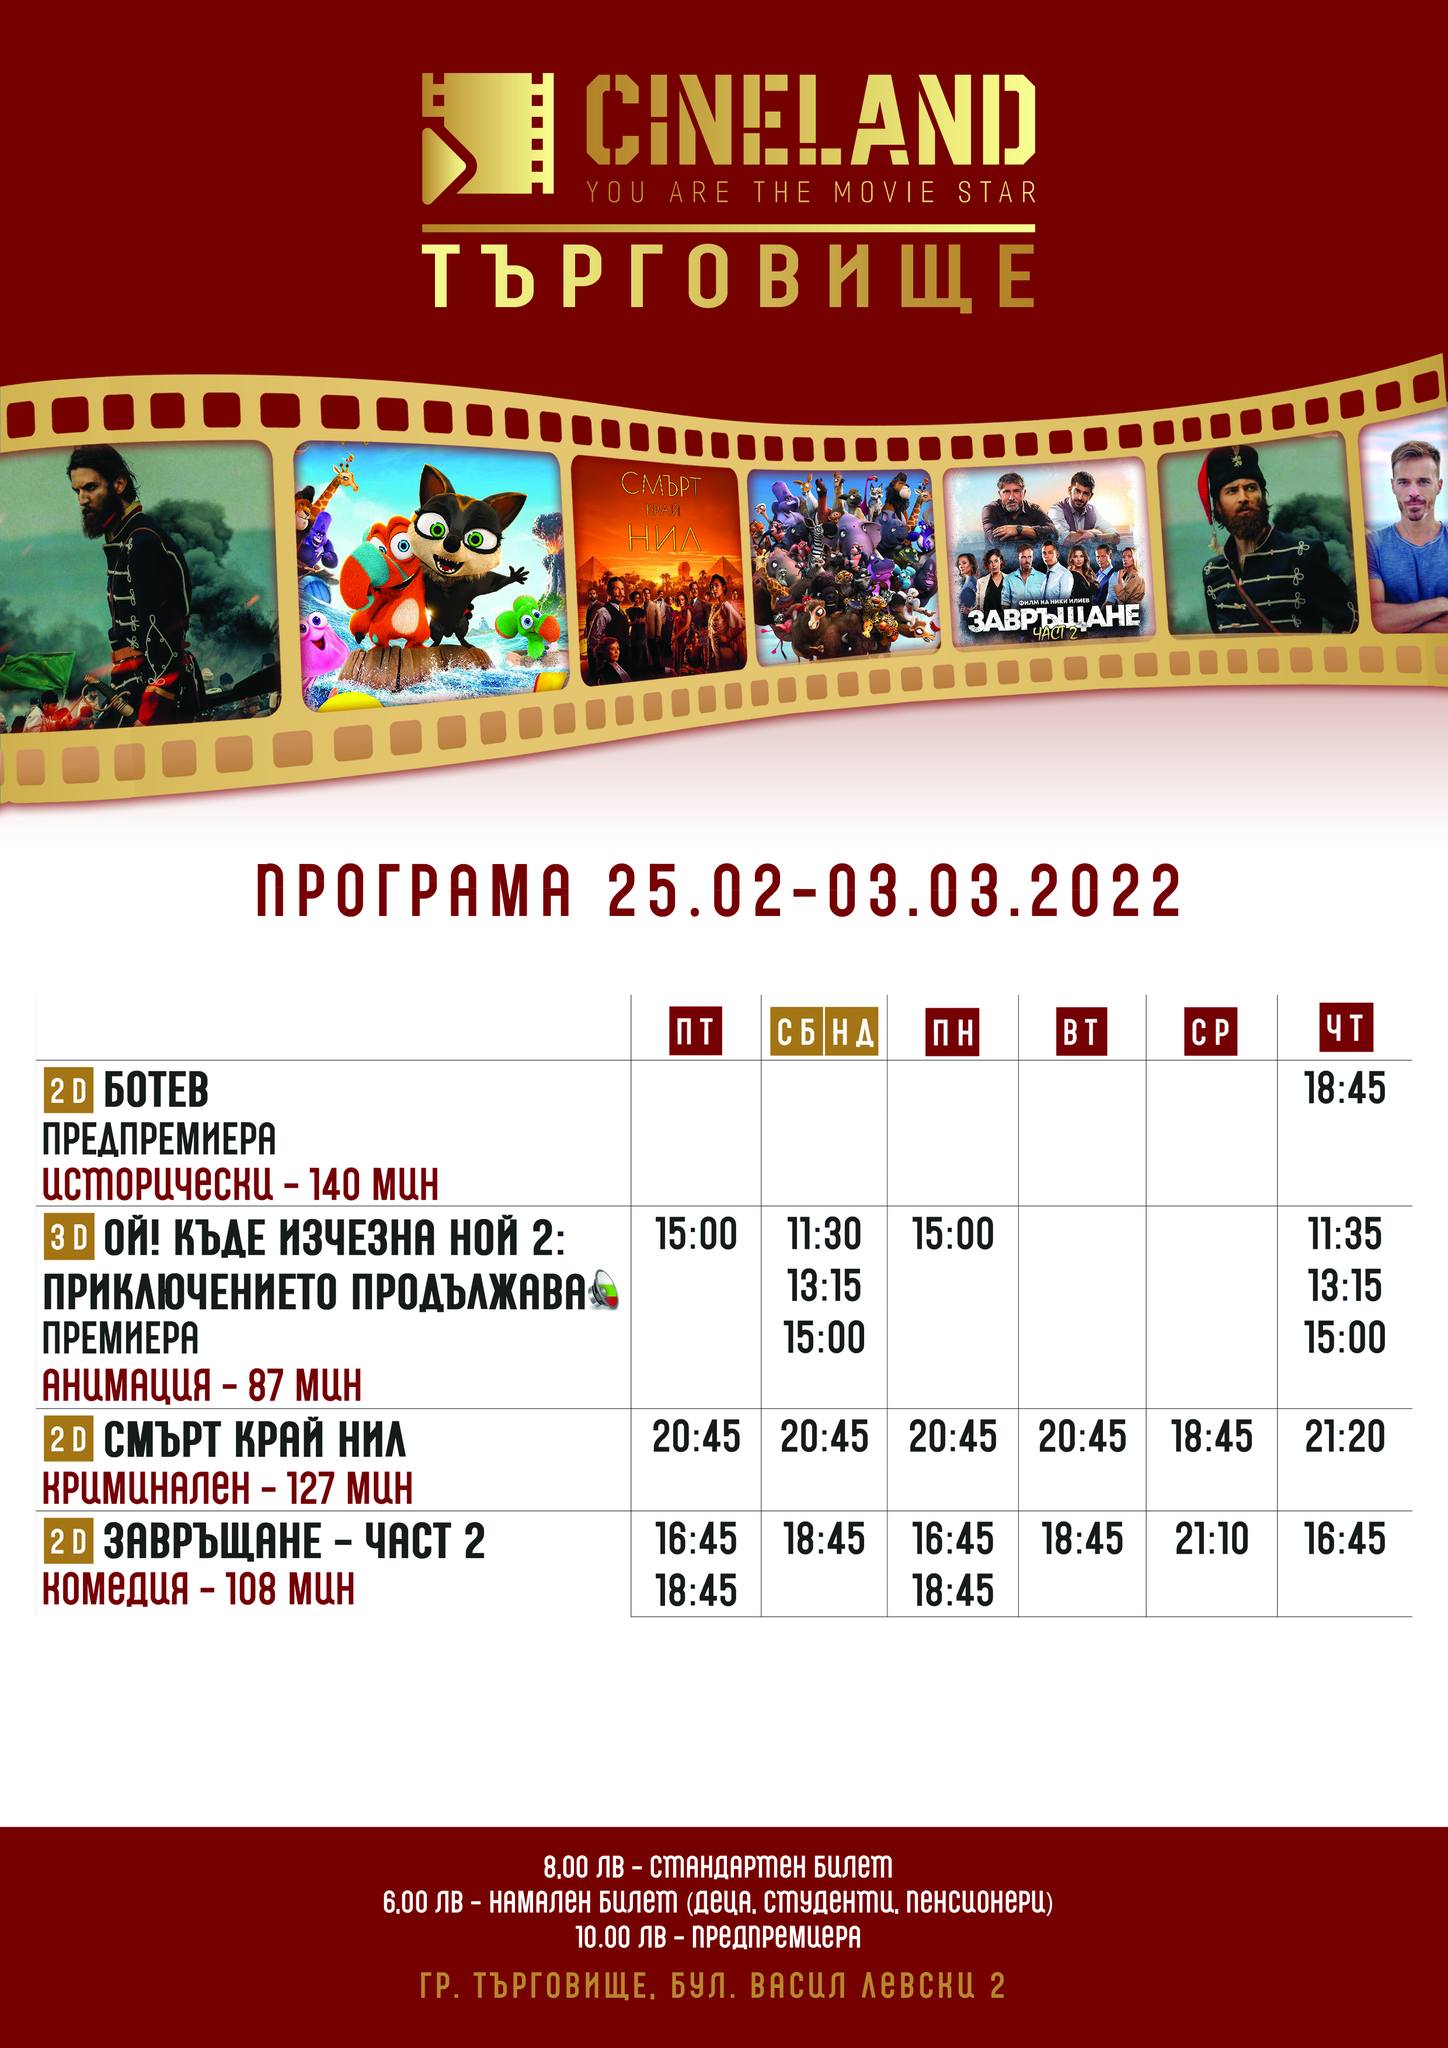 CineLand Търговище: Кино програма - 25.02-04.03.2022